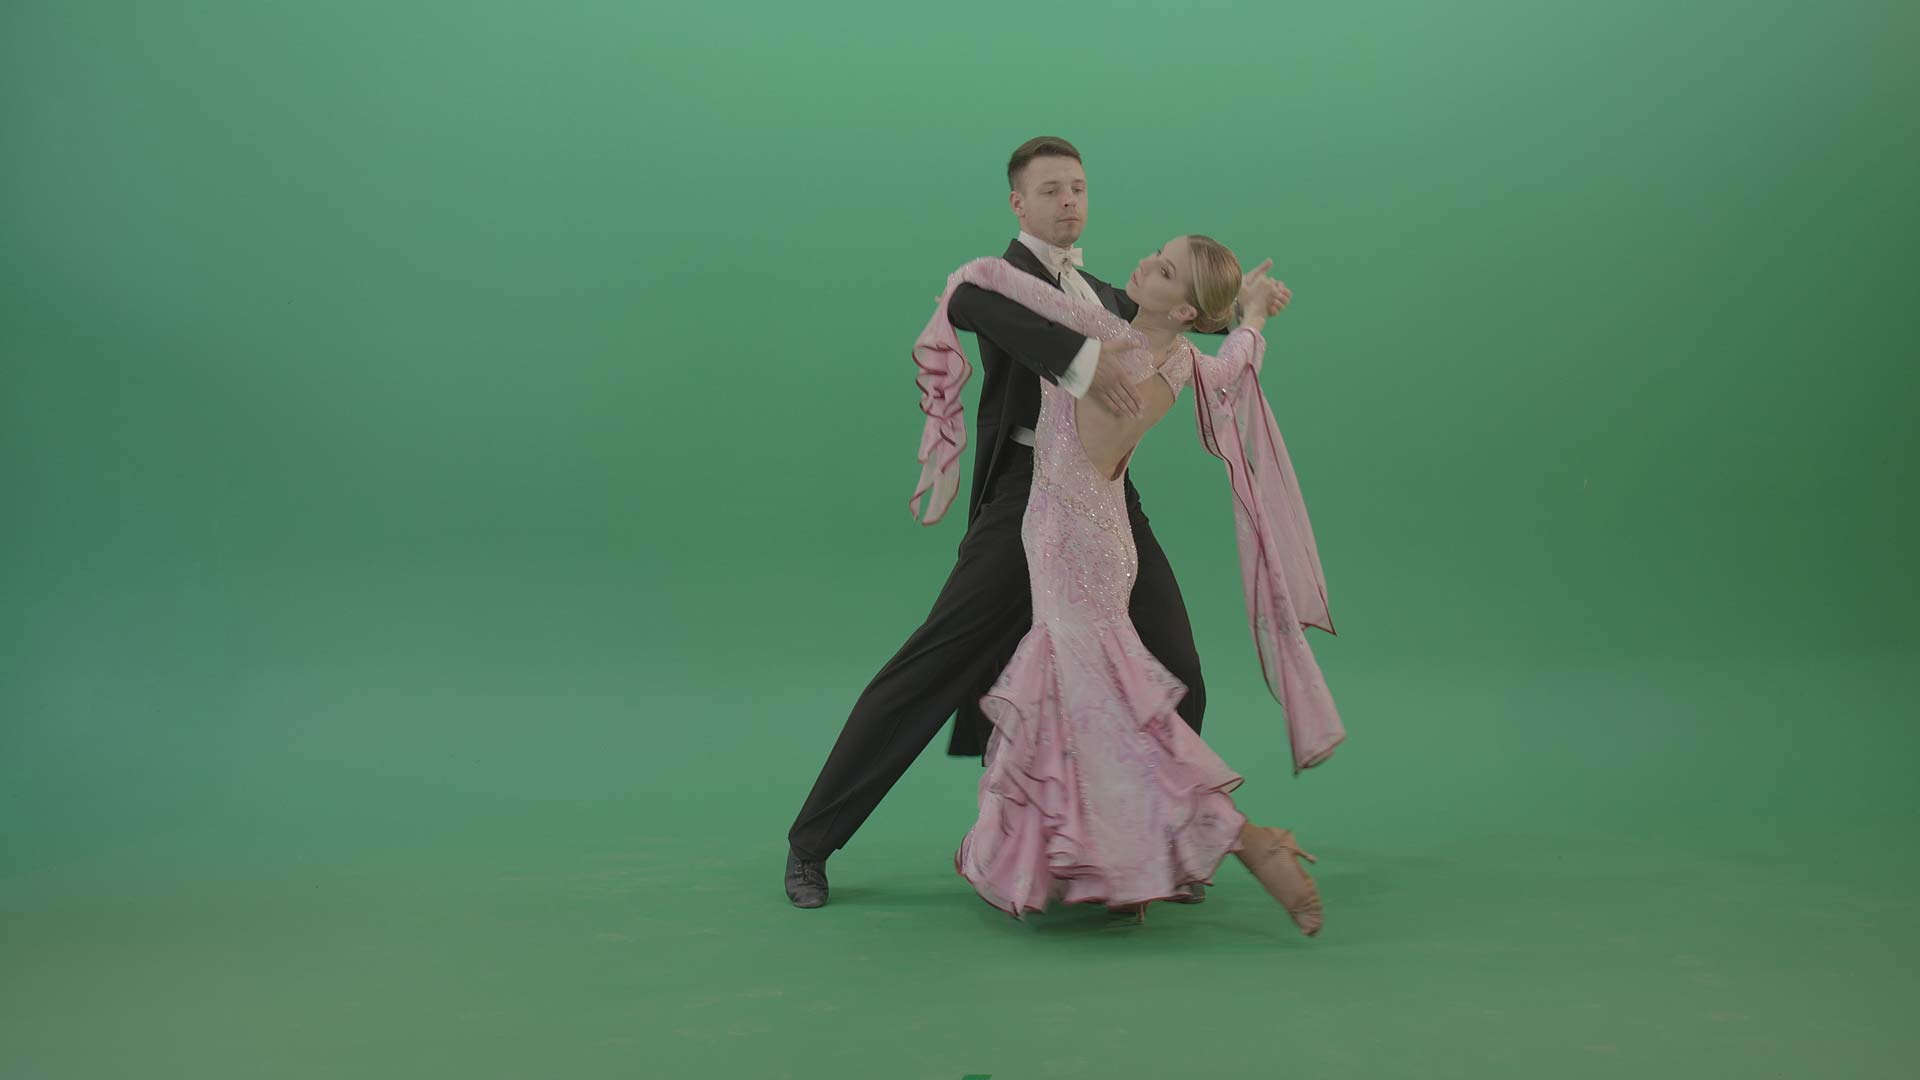 Austrian ball dance video